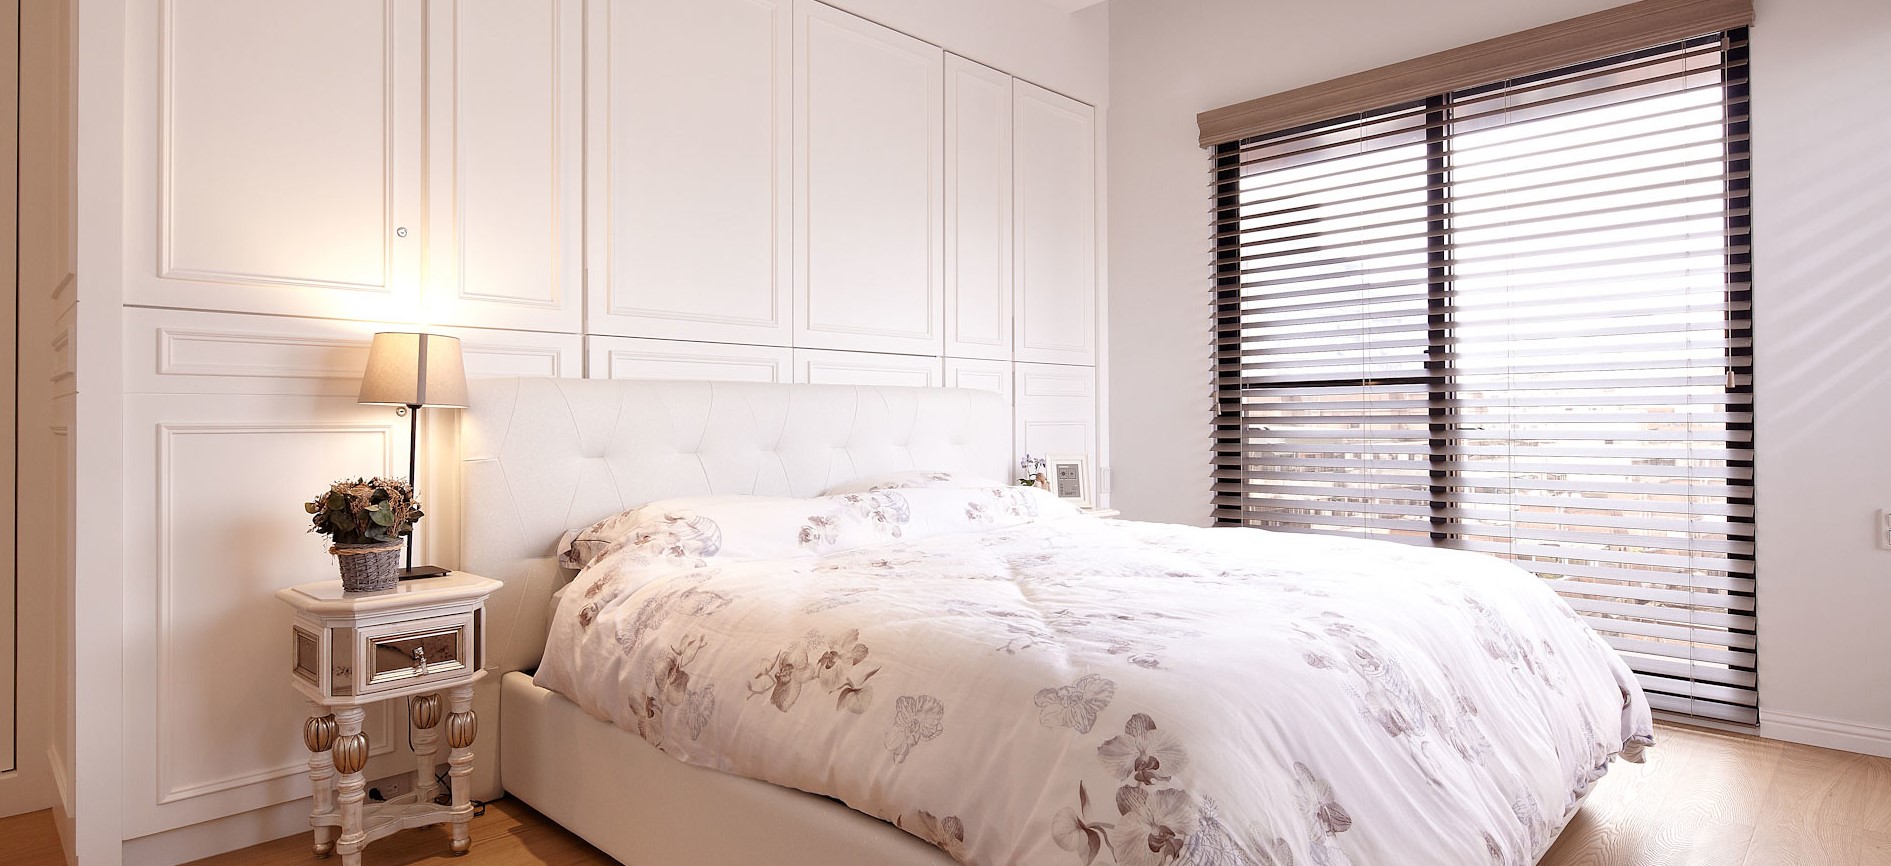 Интерьер спальни в белом цвете: преимущества и недостатки, интересные дизайнерские идеи